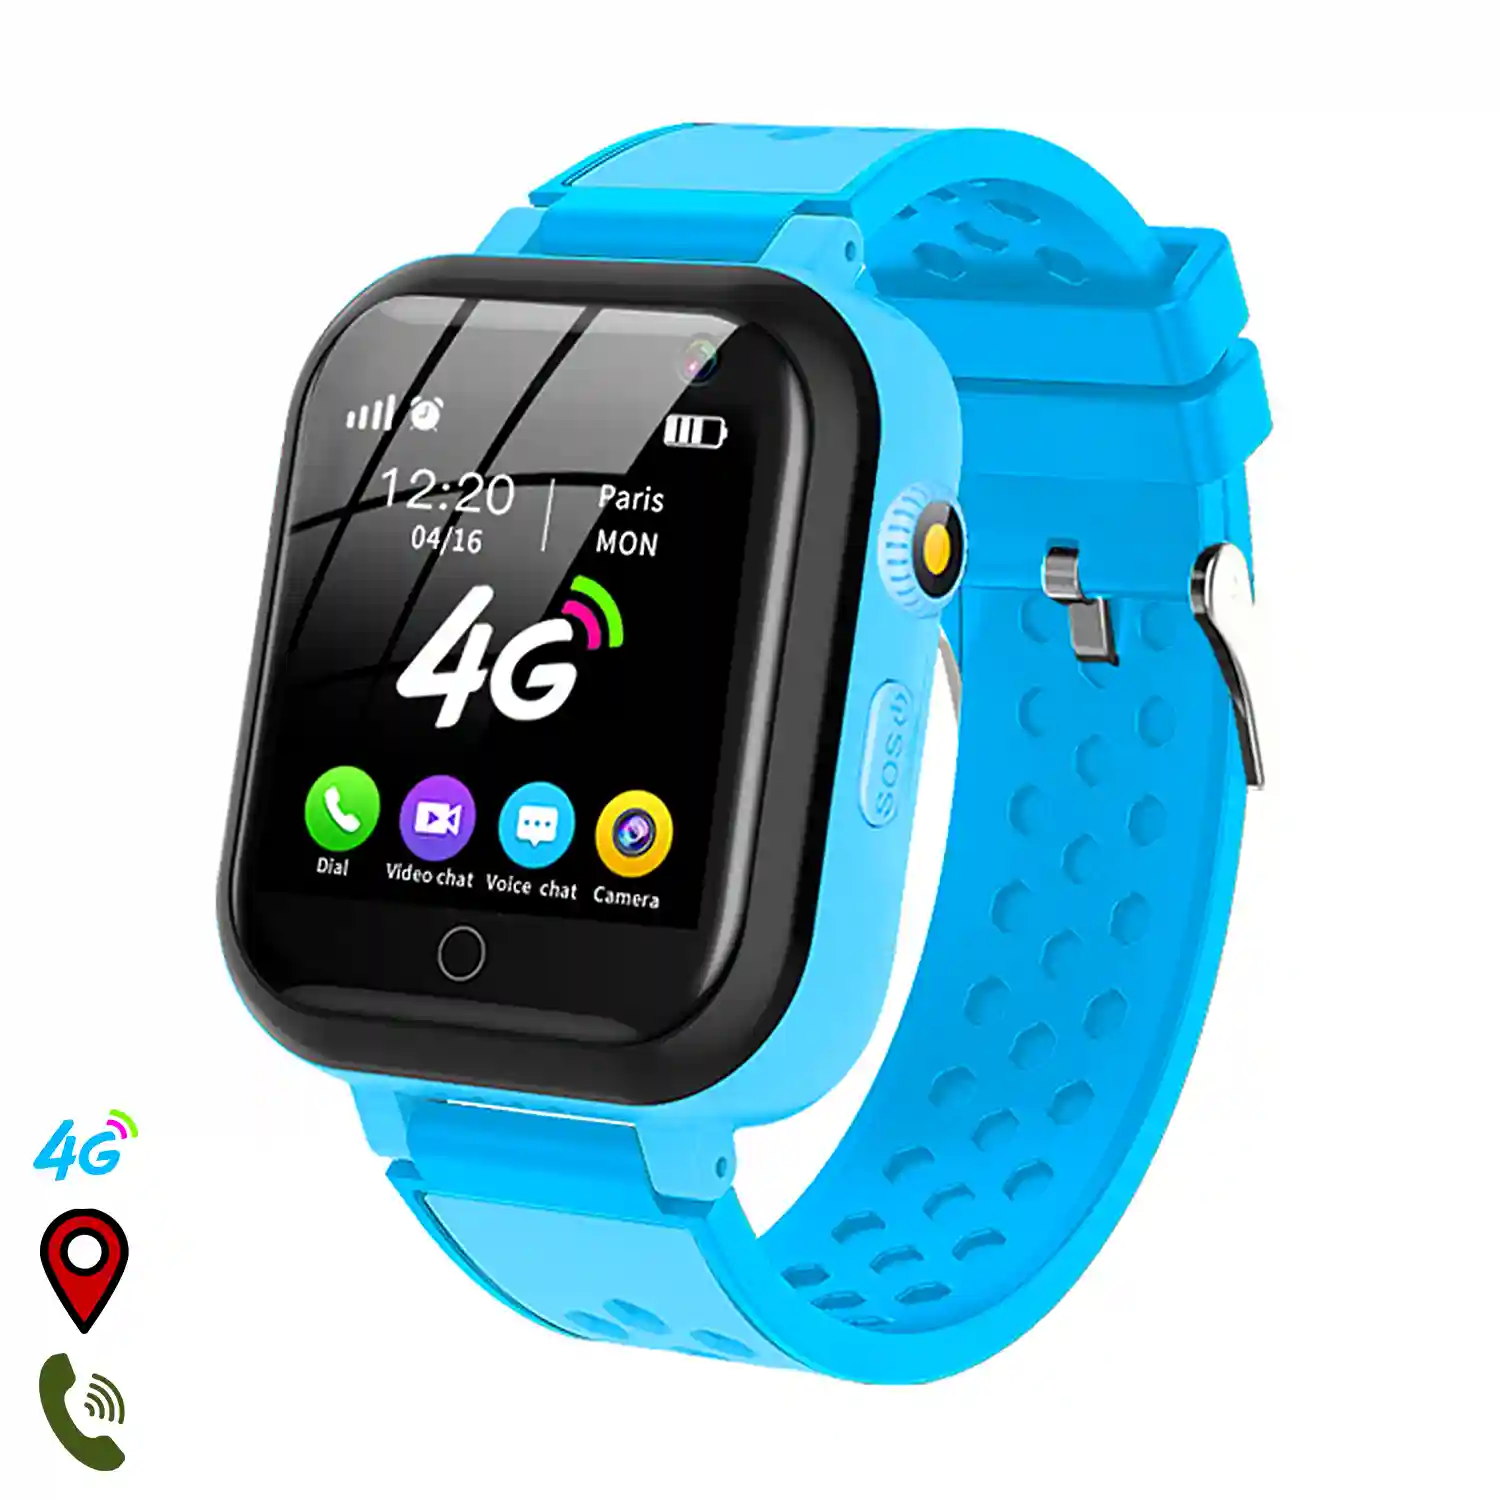 Desalentar Gratificante mordedura Smartwatch T16 4G localizador GPS,Wifi y LBS. Videollamada, micro chat,  botón SOS.